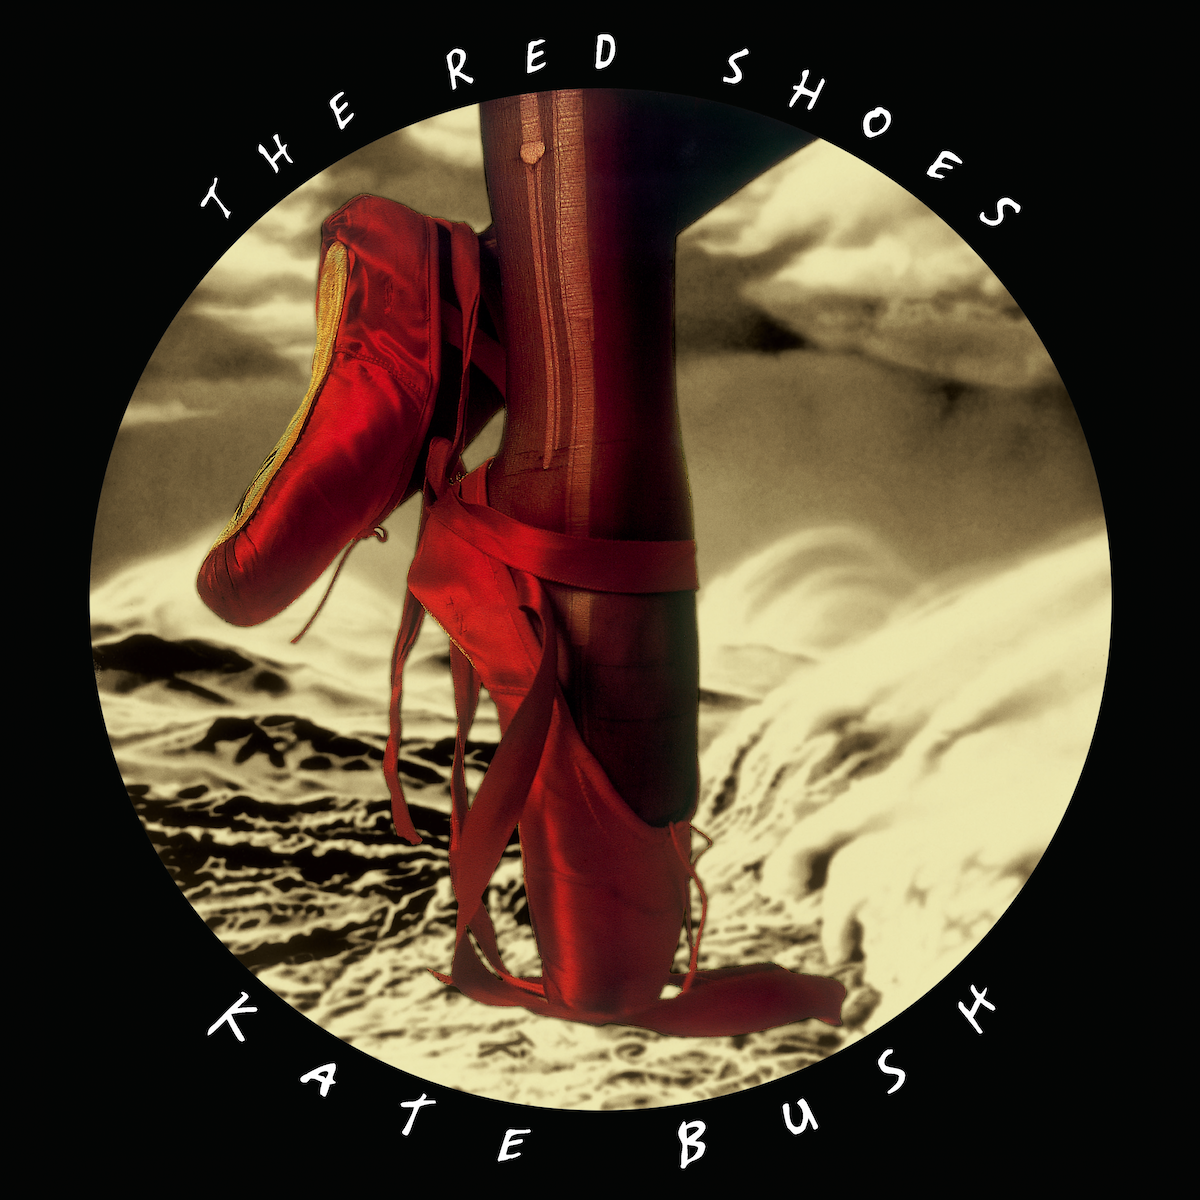 Kate Bush / The Red Shoes coloured vinyl LP